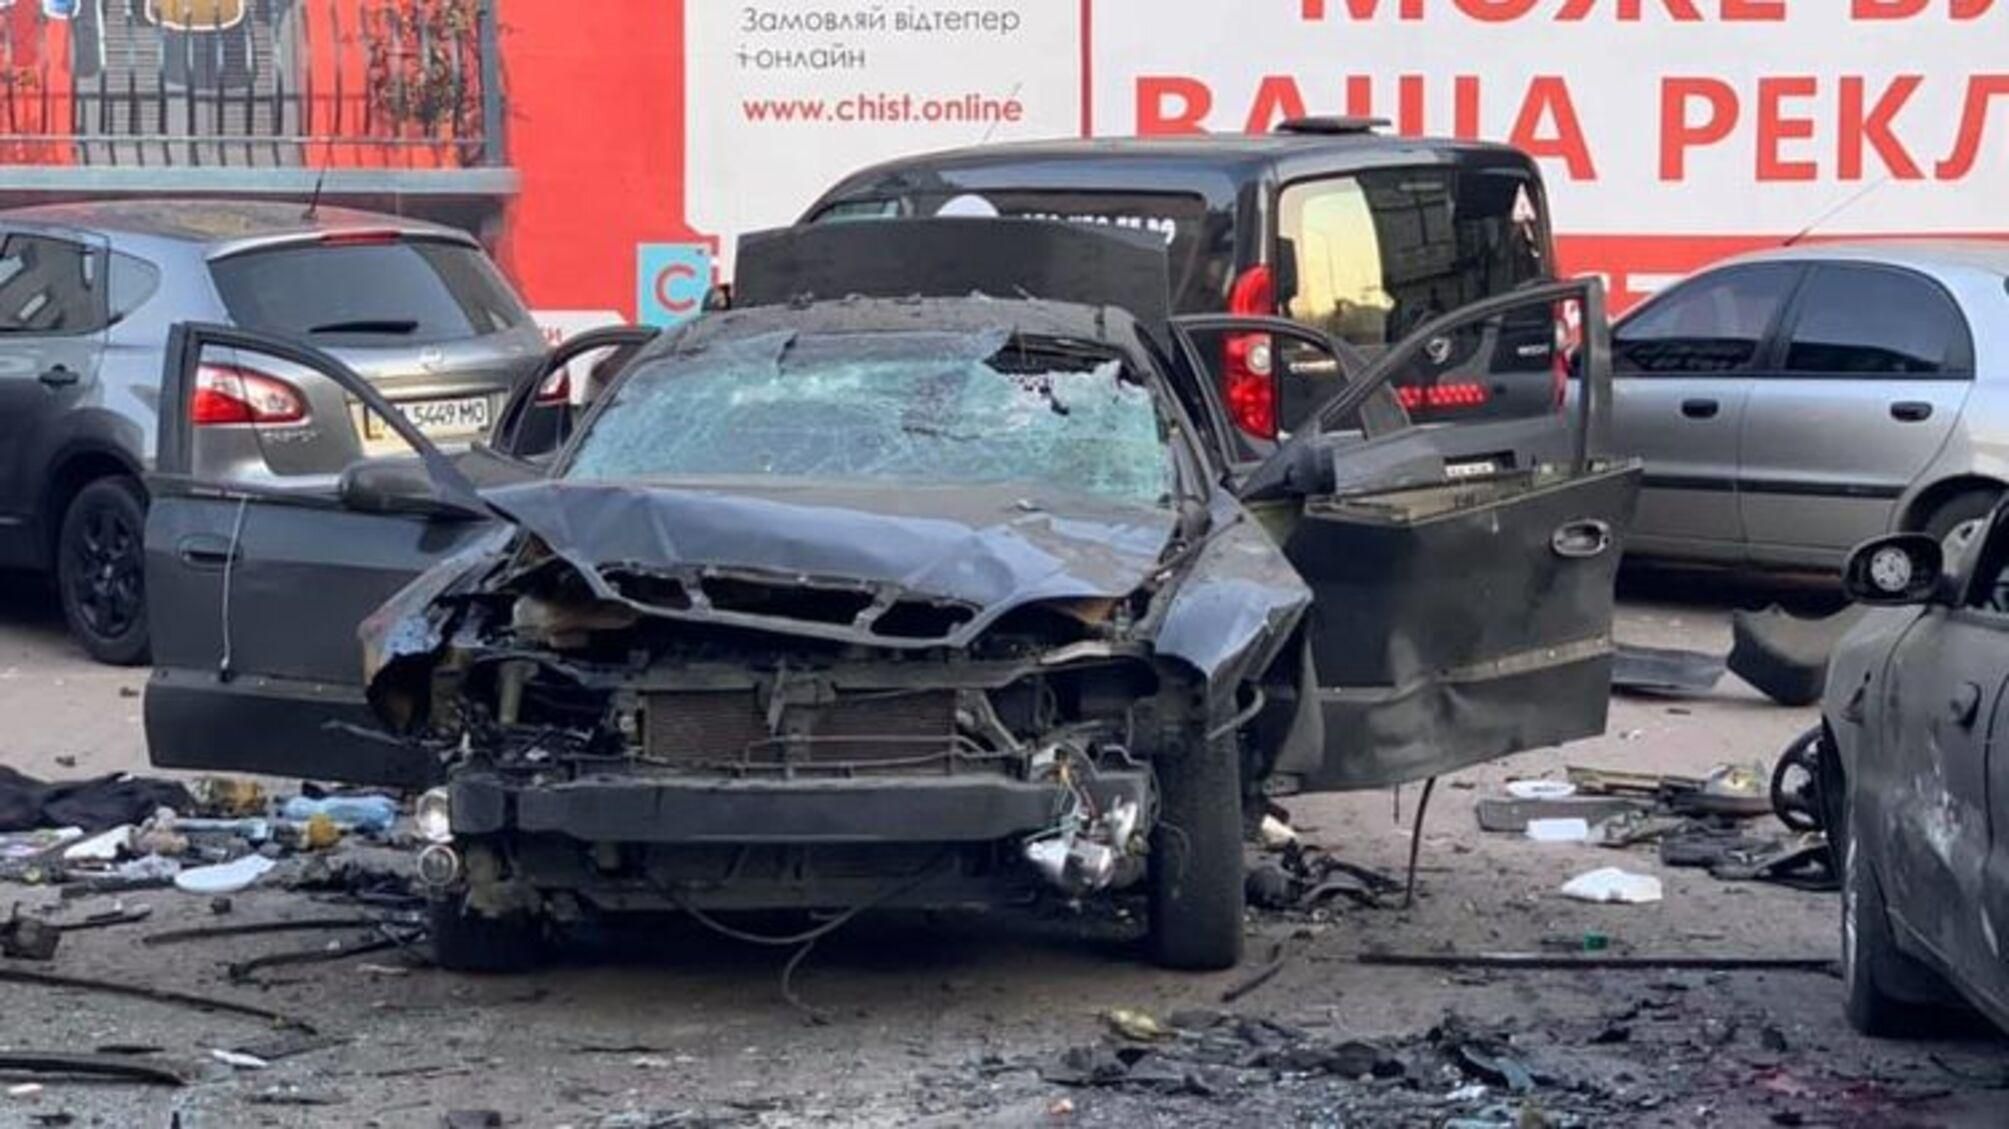 Россиян осудили за взрыв авто разведчика в Киеве 4 апреля 2019